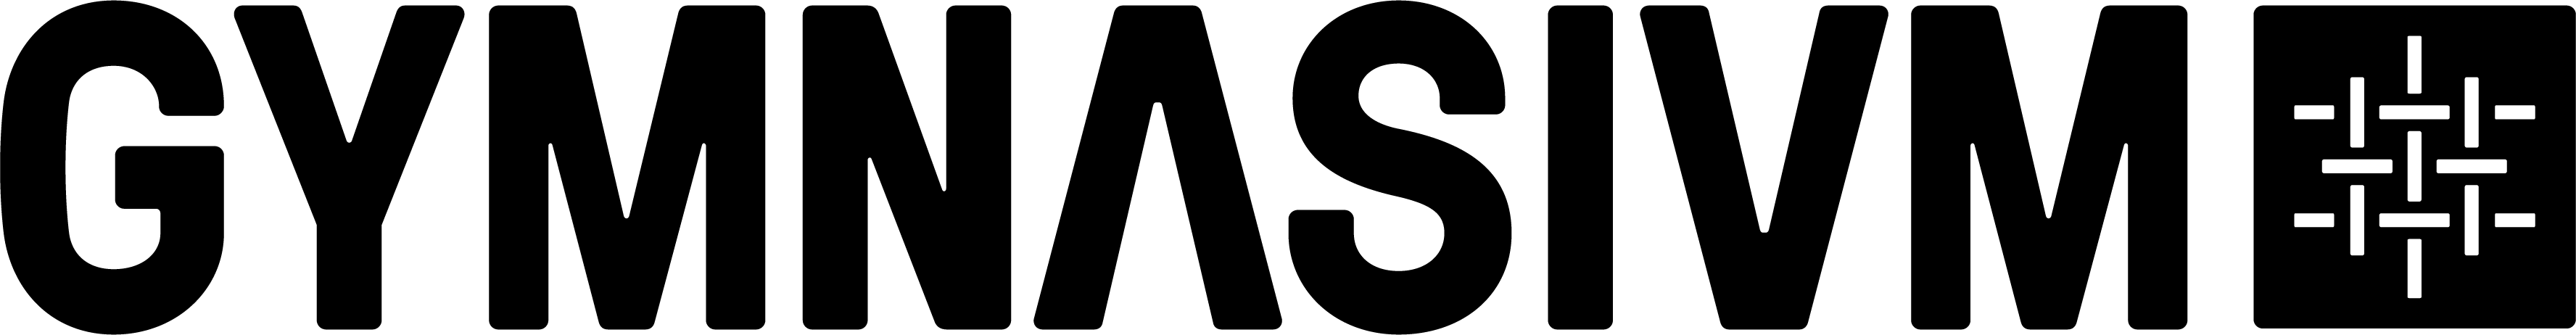 logo for GYMNASIUM